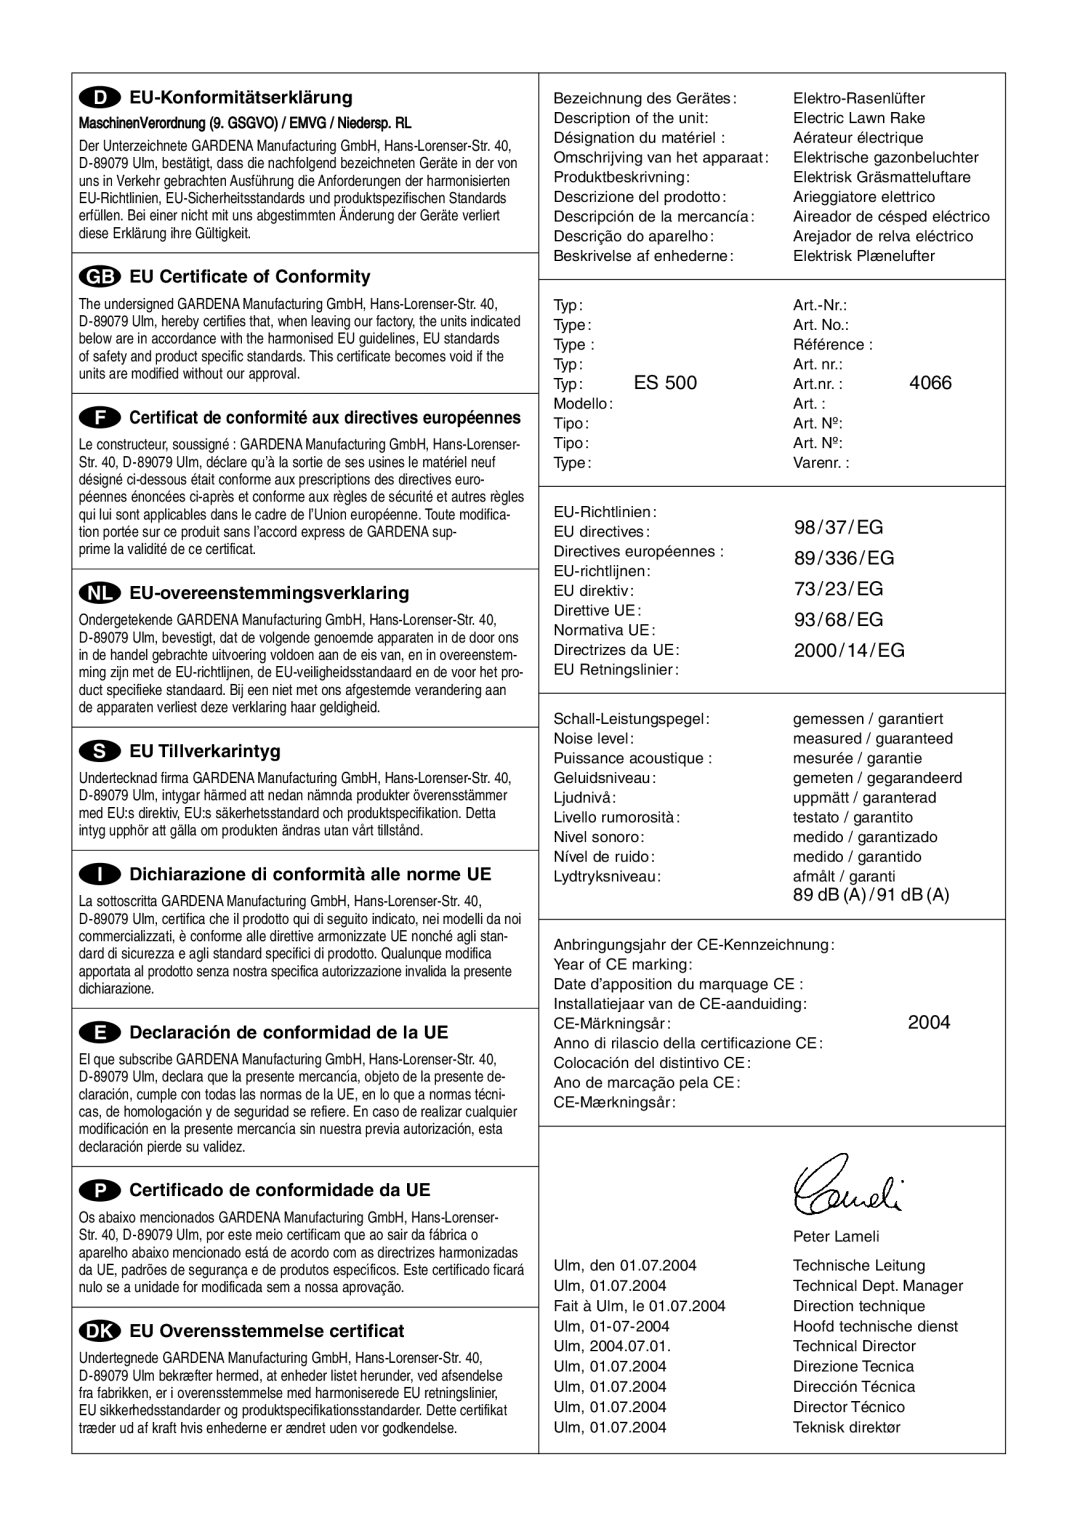 Gardena ES 500 manual D EU-Konformitätserklärung, G EU Certificate of Conformity, N EU-overeenstemmingsverklaring 